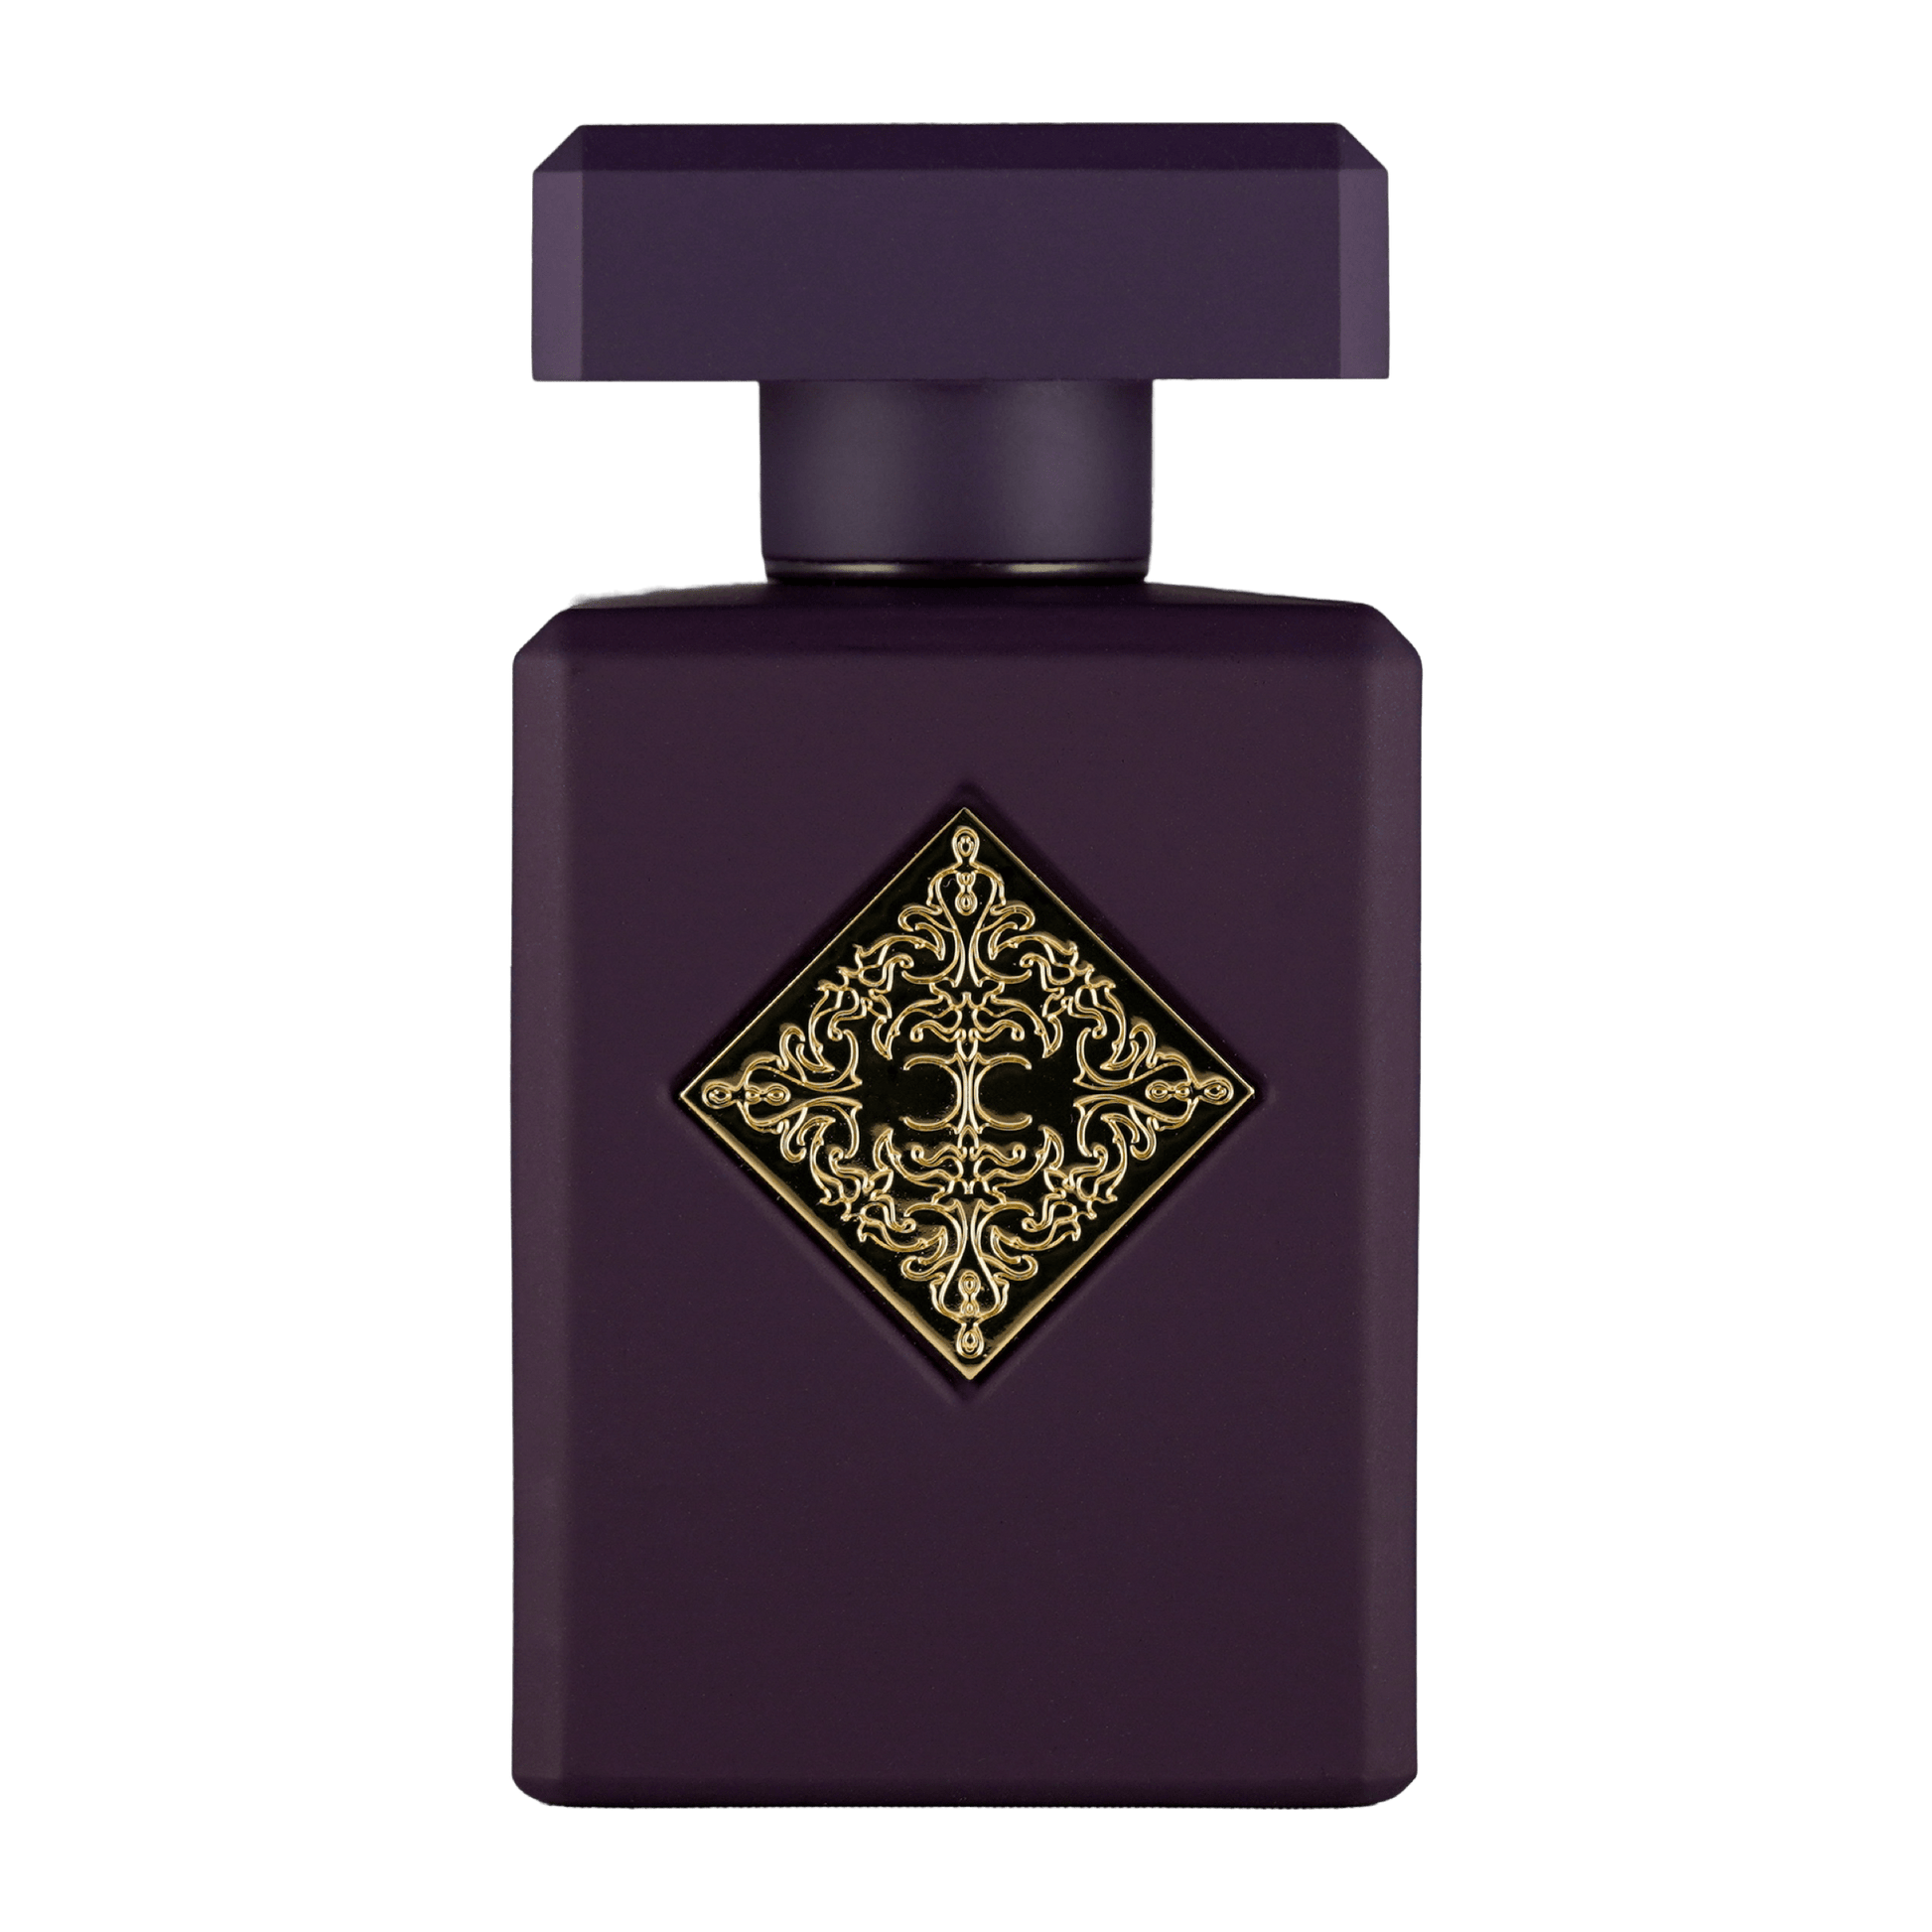 Bild von dem Flakon des Duftes Narcotic Delight als Eau de Parfum von Initio Parfums Prives angeboten zum kaufen als Parfümprobe.